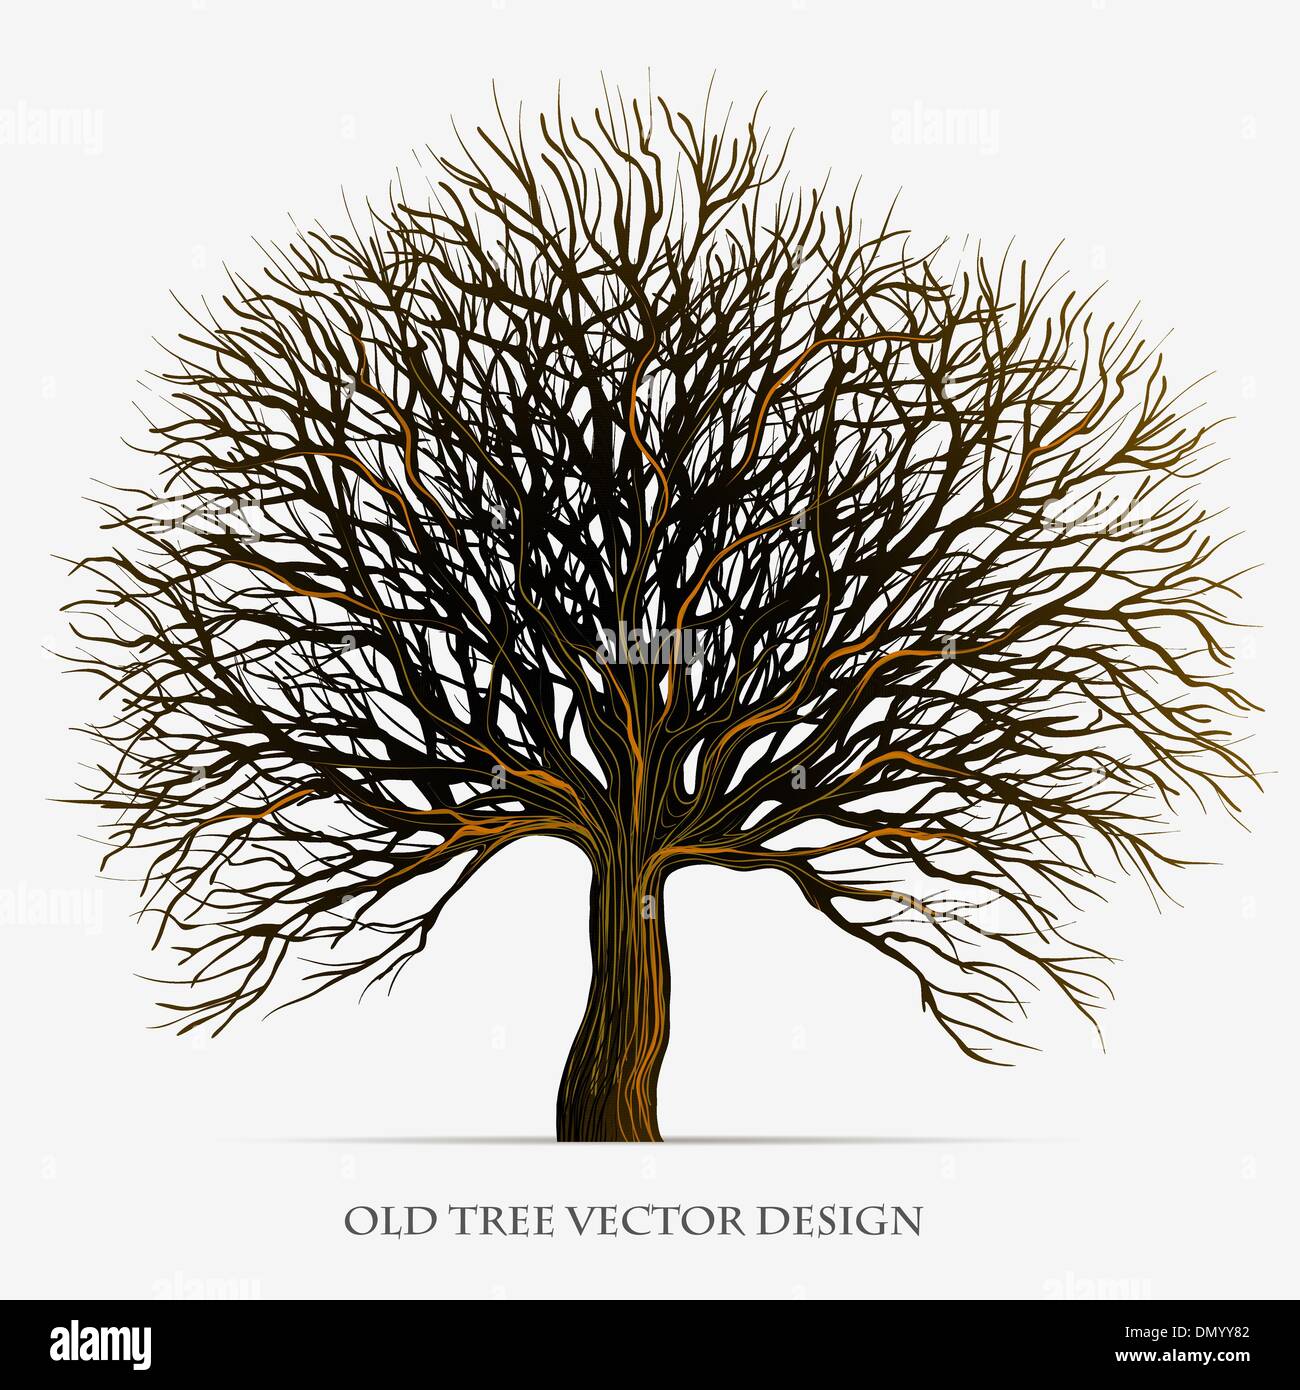 Baum-Vektor-Silhouette-Illustration-design Stock Vektor